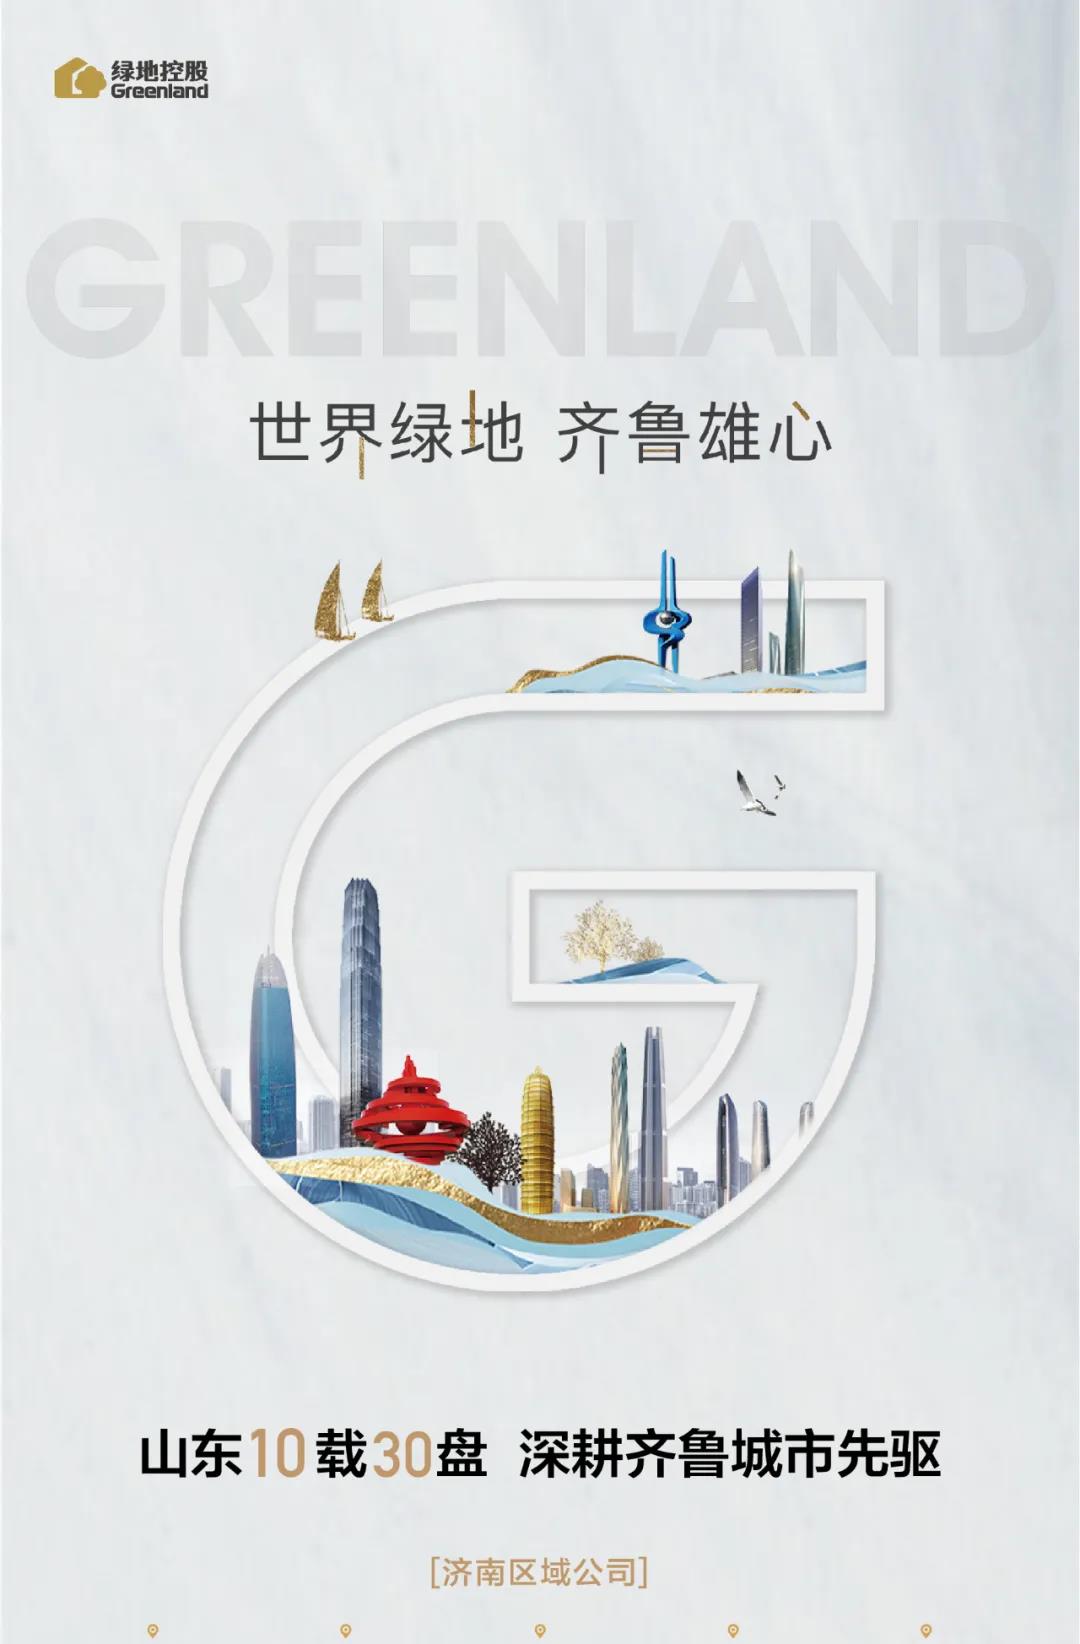 住宅重新定义丨2020绿地海珀·云庭公开全球发布-中国网地产